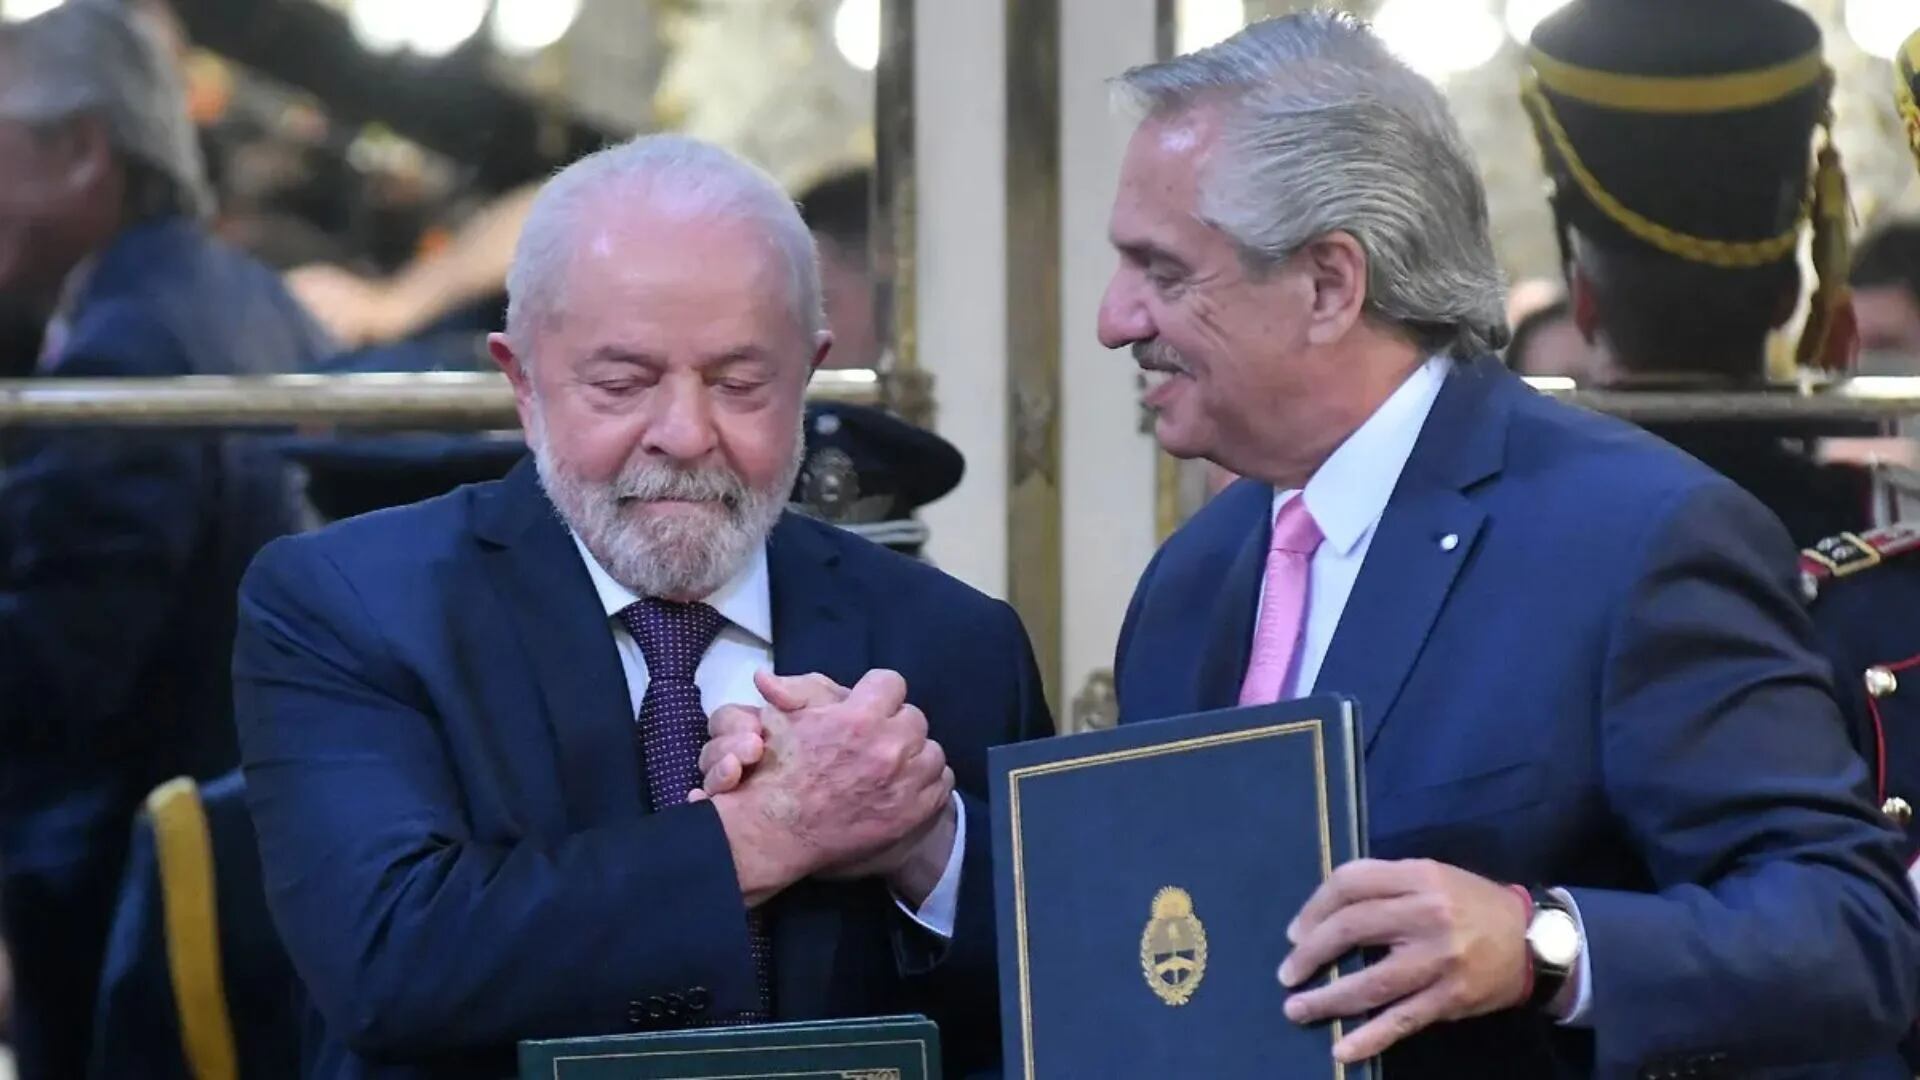 El particular error de Alberto Fernández en plena conferencia junto a Lula da Silva: "Presidente Chávez"